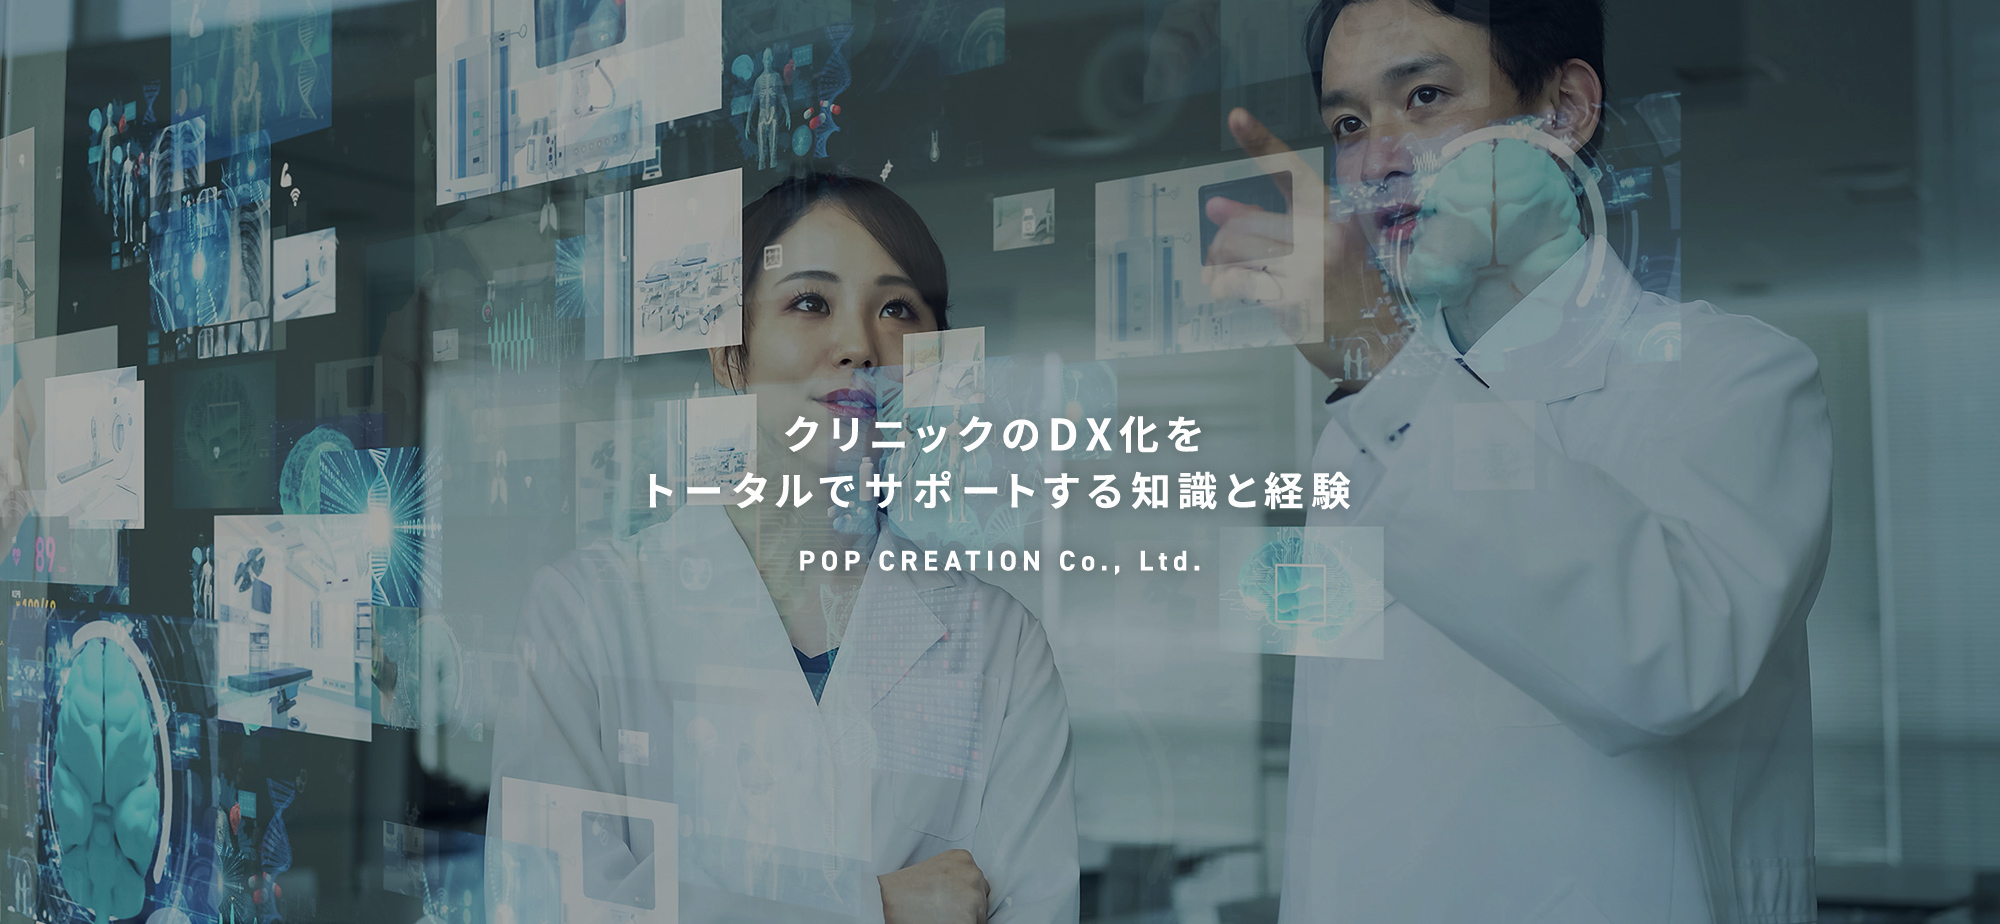 クリニックのDX化をトータルでサポートする知識と経験 POP CREATION Co., Ltd.